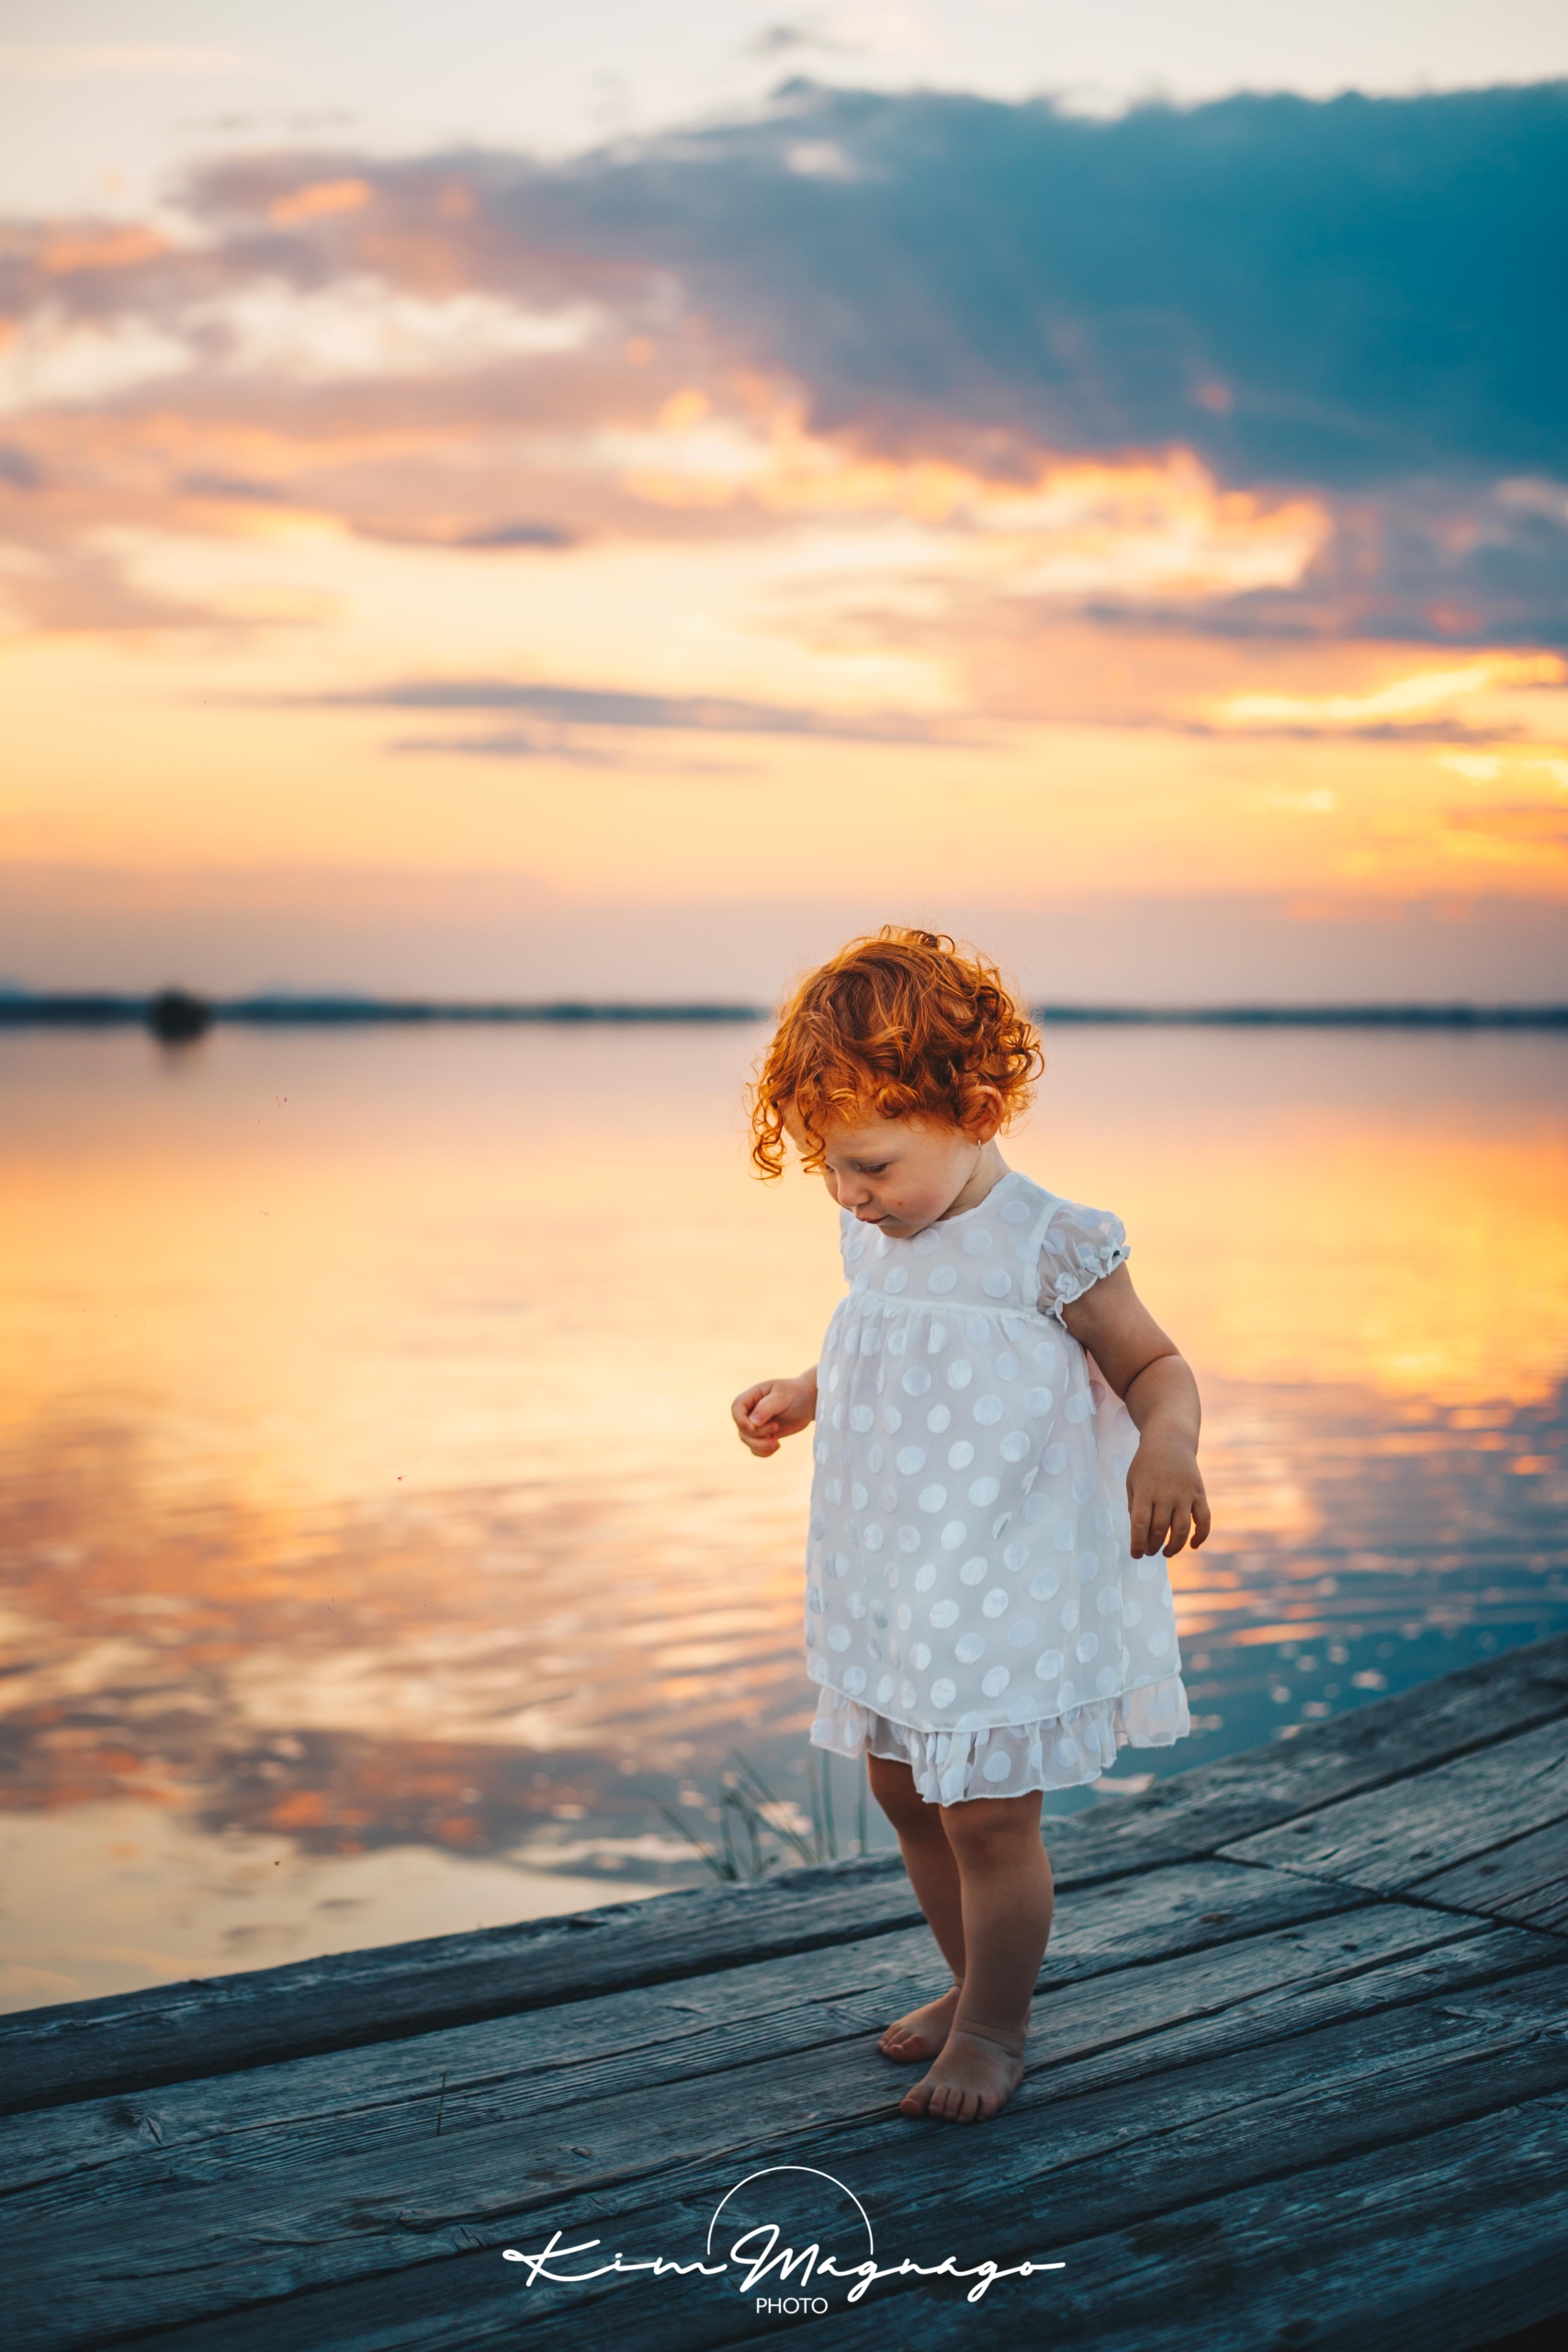 bambina fotografata al mare d'estate